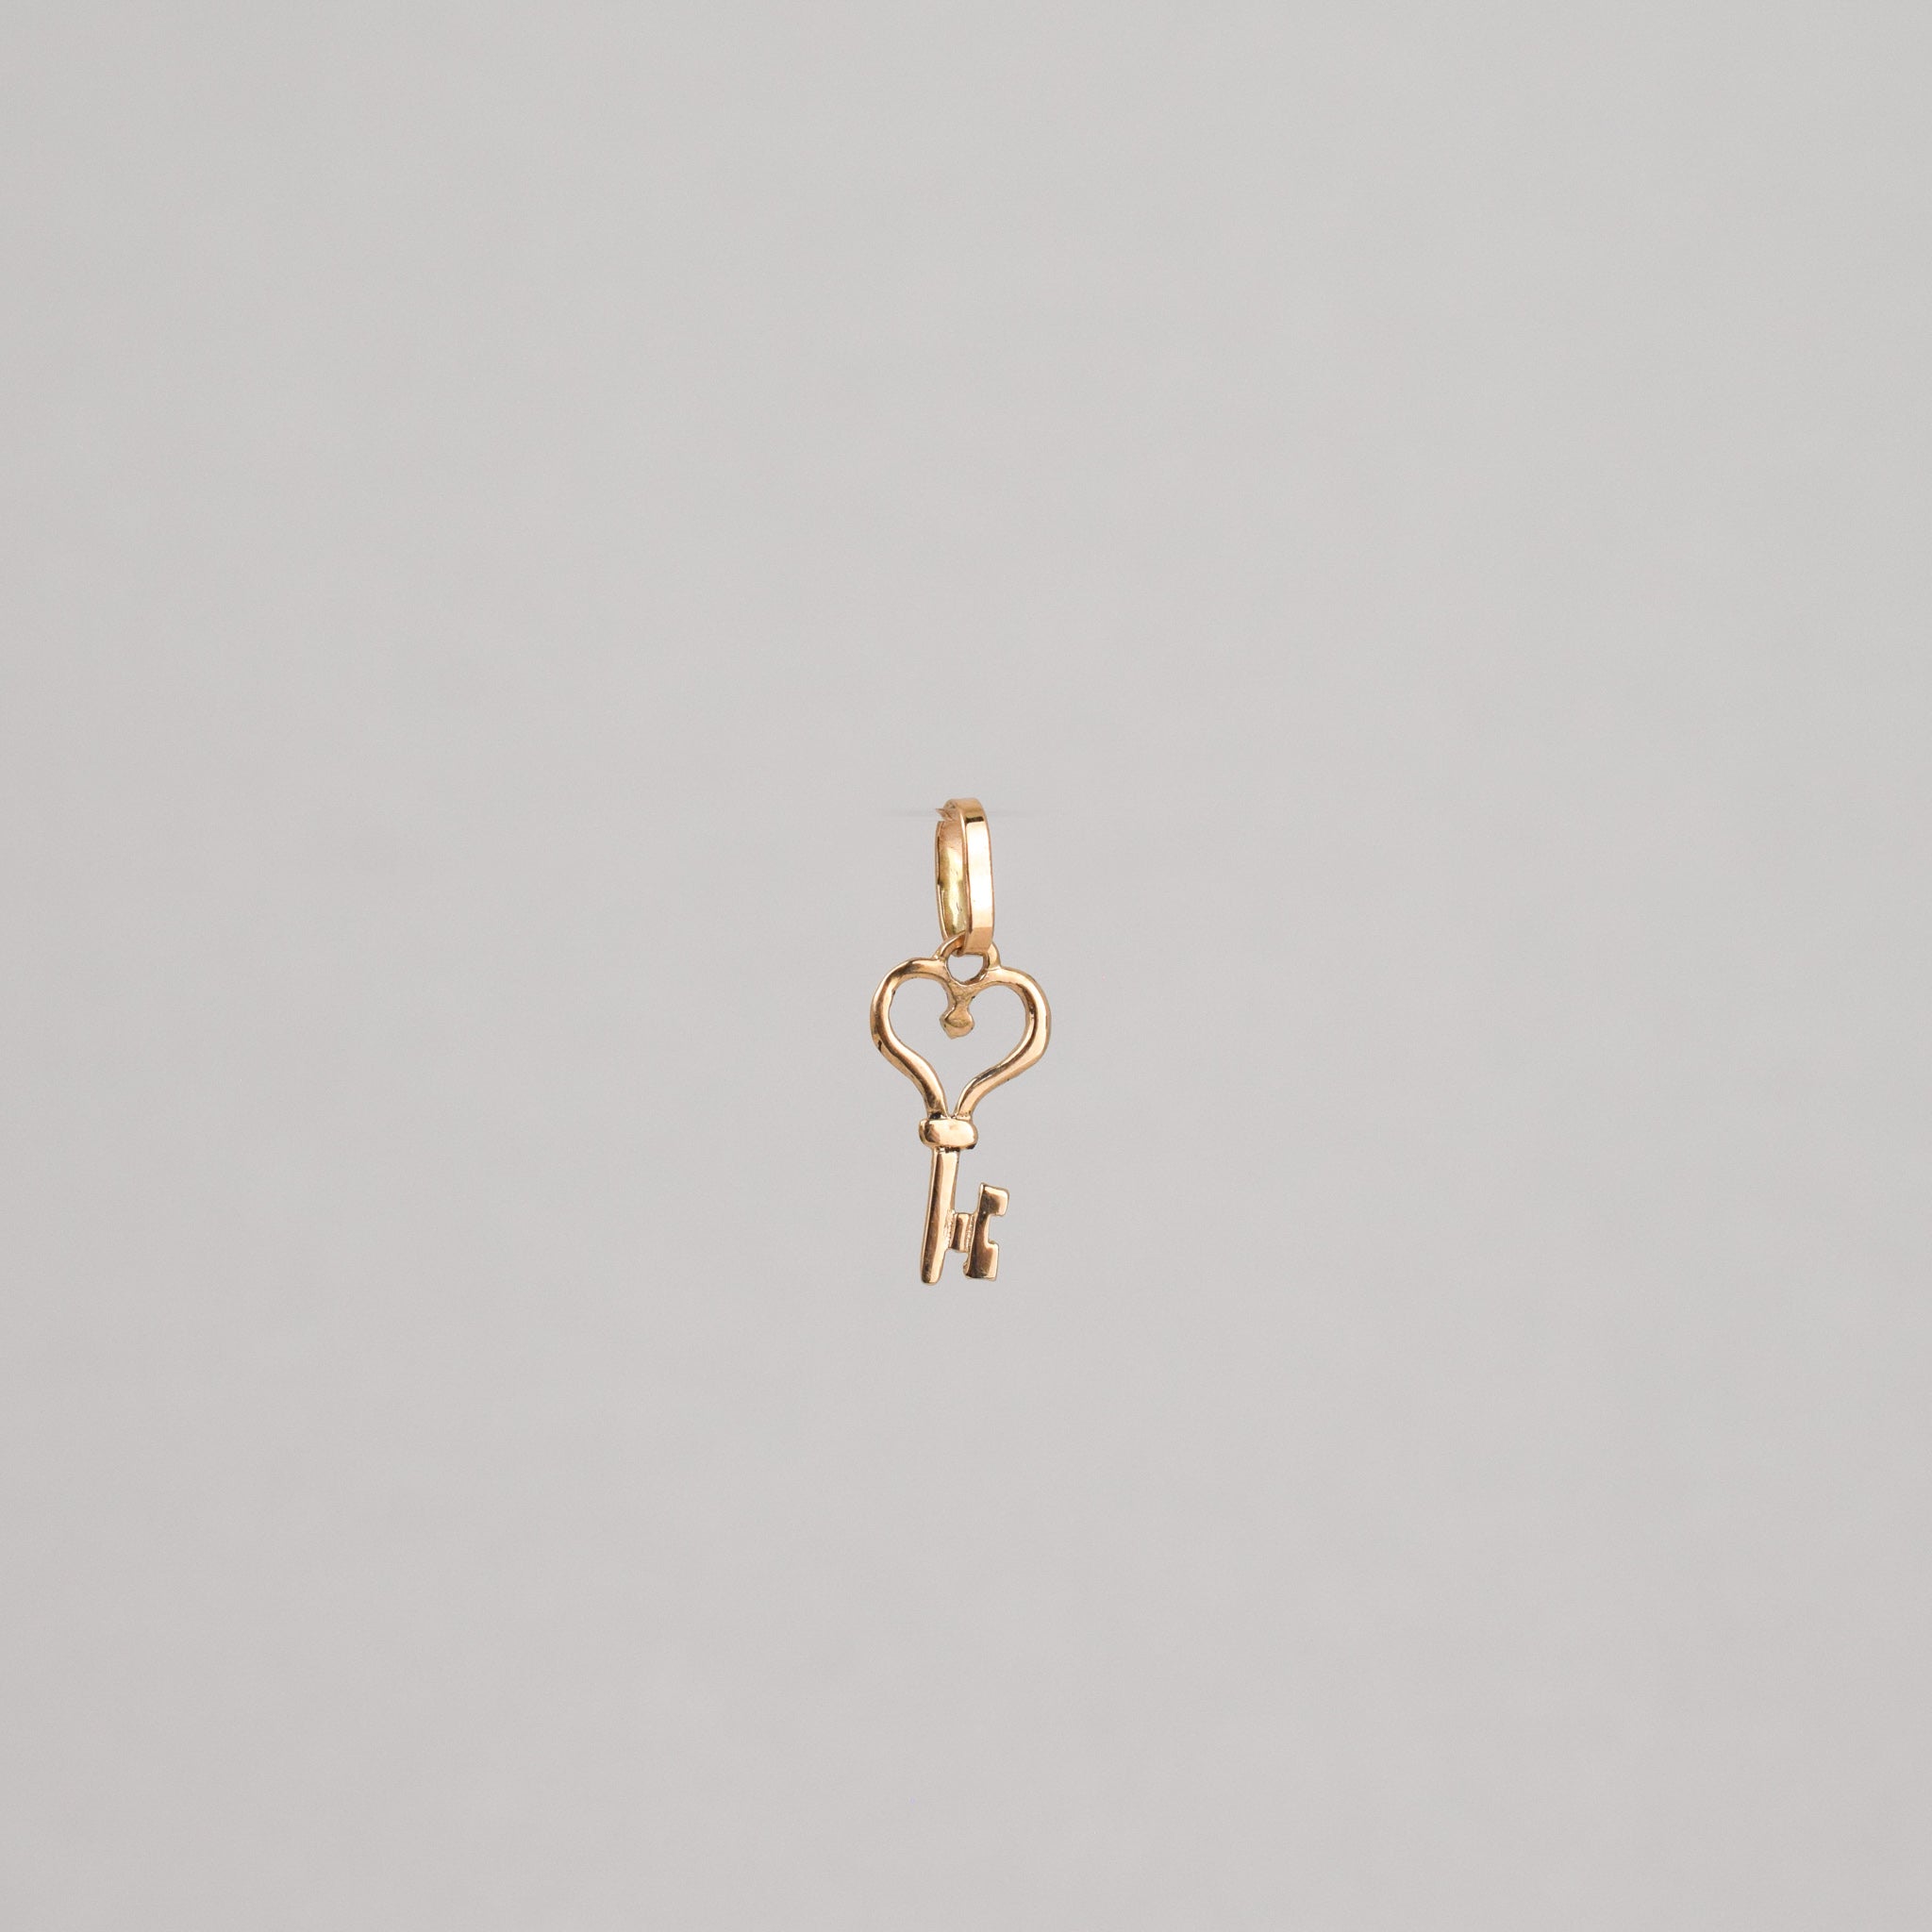 vintage gold key pendant, folklor